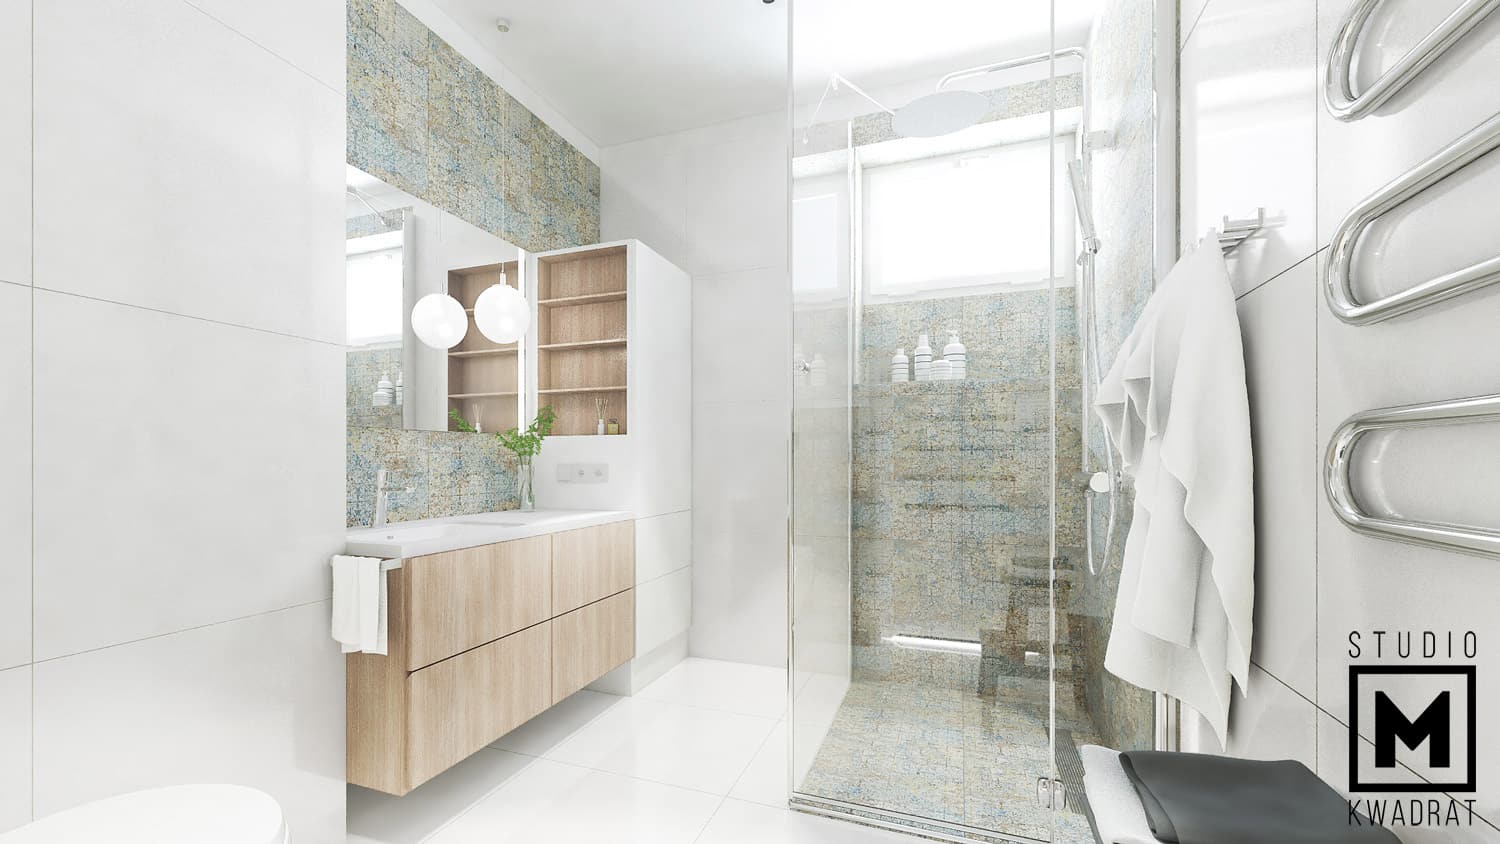 płytki carpet, ozdobny grzejnik, projekt jasnej łazienki z przeszkloną kabiną prysznicową